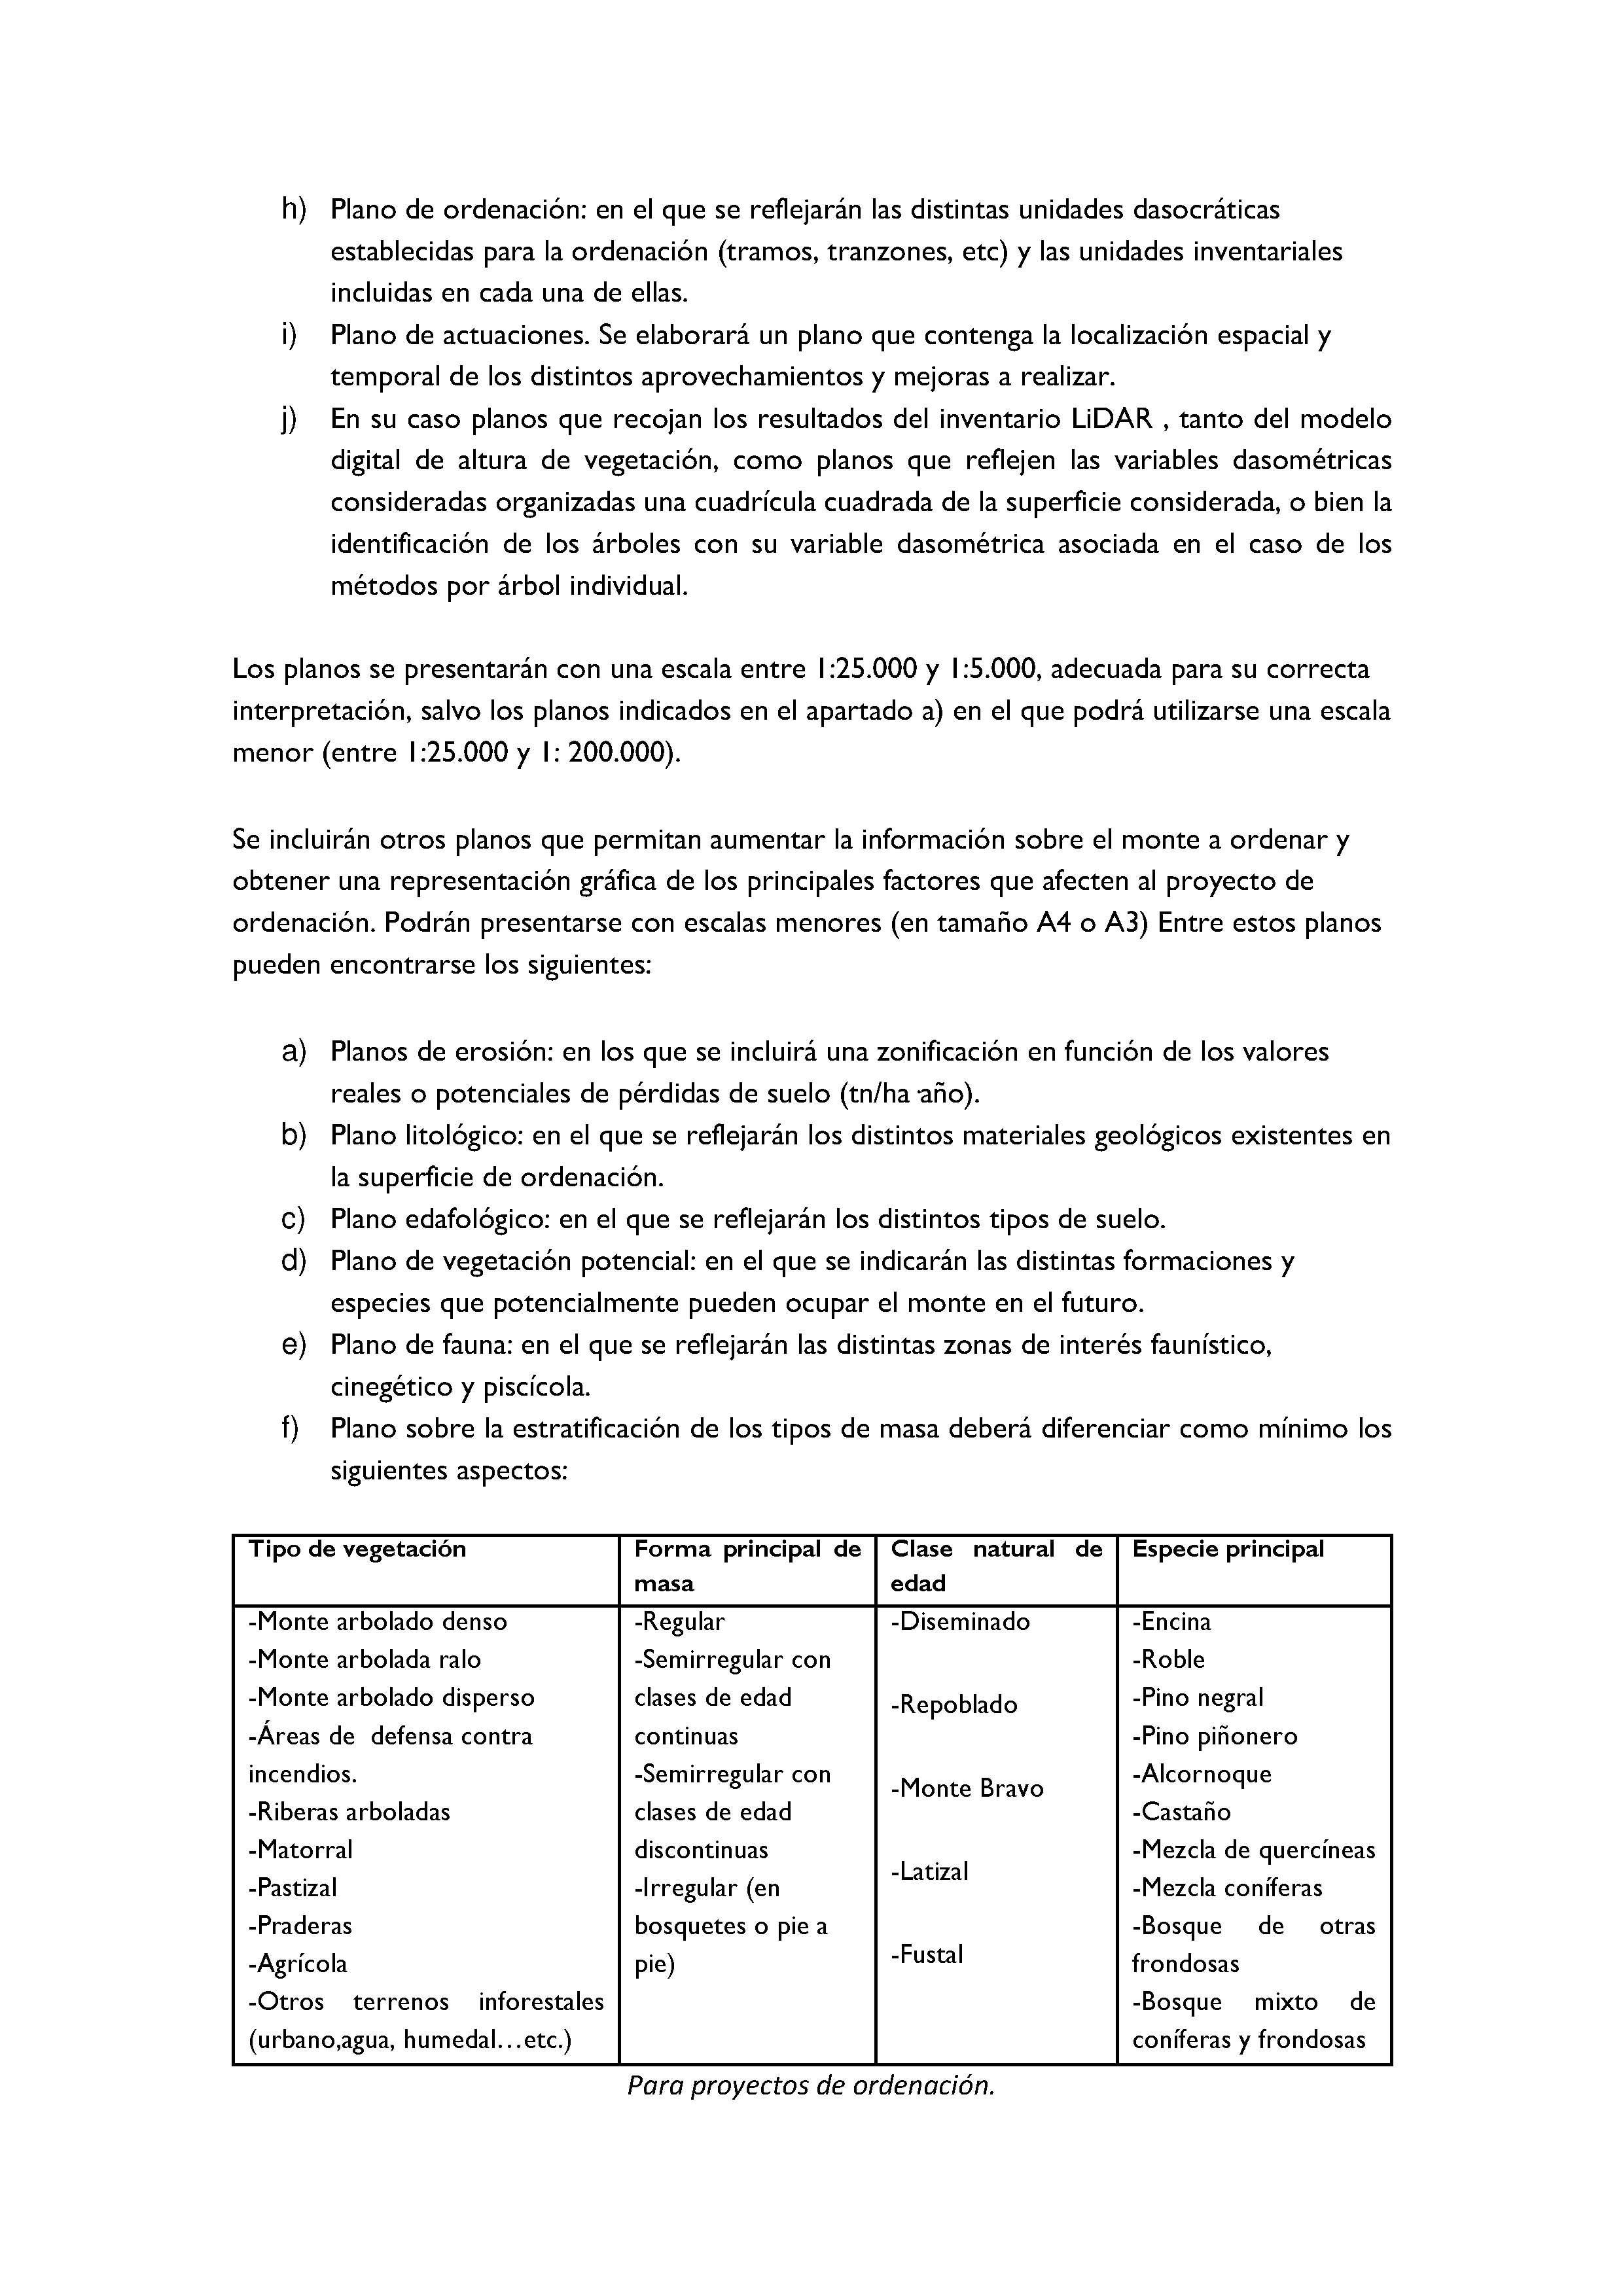 ANEXO - INSTRUCCIONES DE ORDENACIÓN DE LOS PROYECTOS DE ORDENACIÓN DE MONTES Pag 43